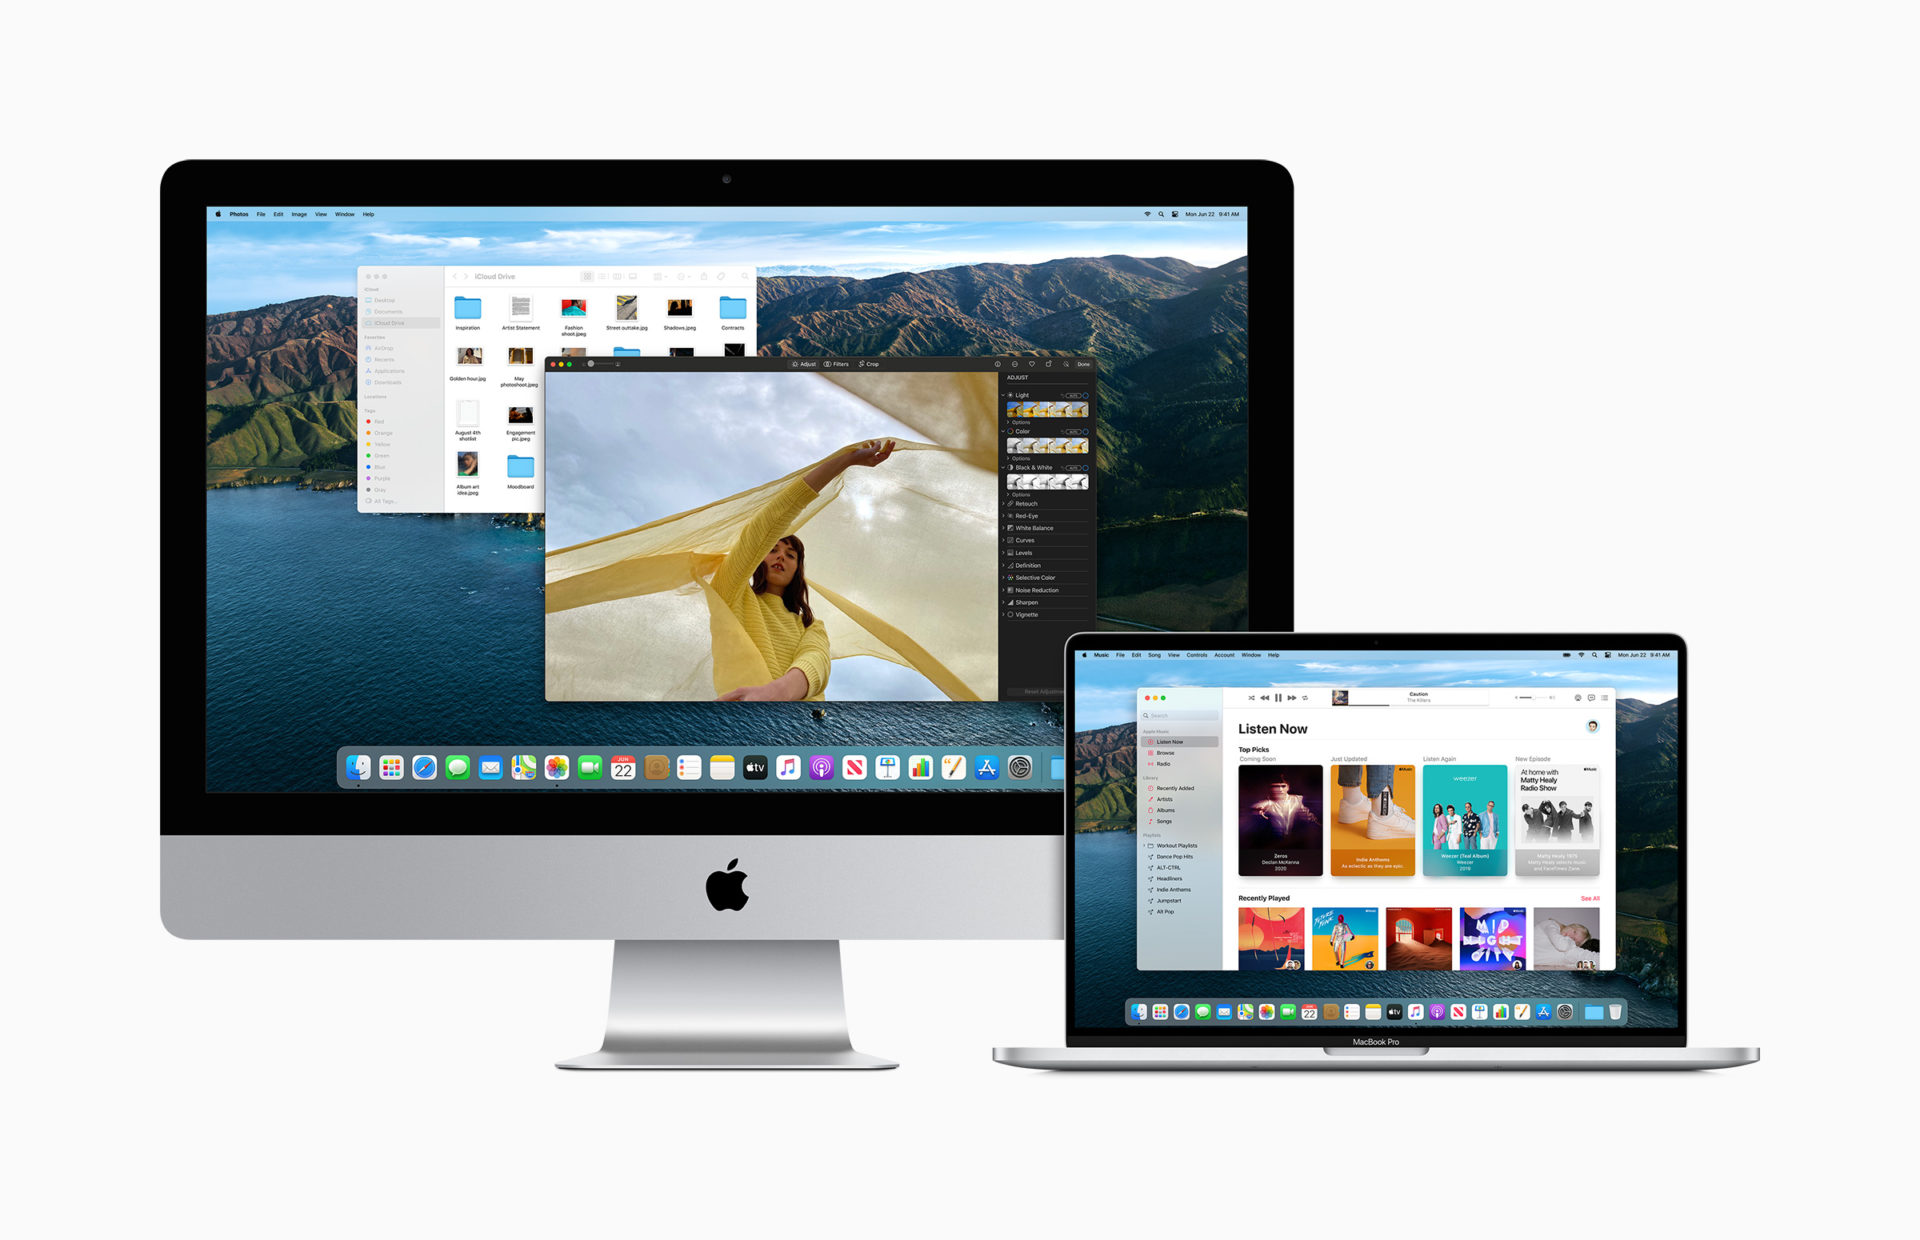 ชิป ARM เครื่อง Mac ตัวแรกของ Apple จะเป็นชิปแบบ 12 Core เปิดตัวใน MacBook Pro ปลายปีนี้